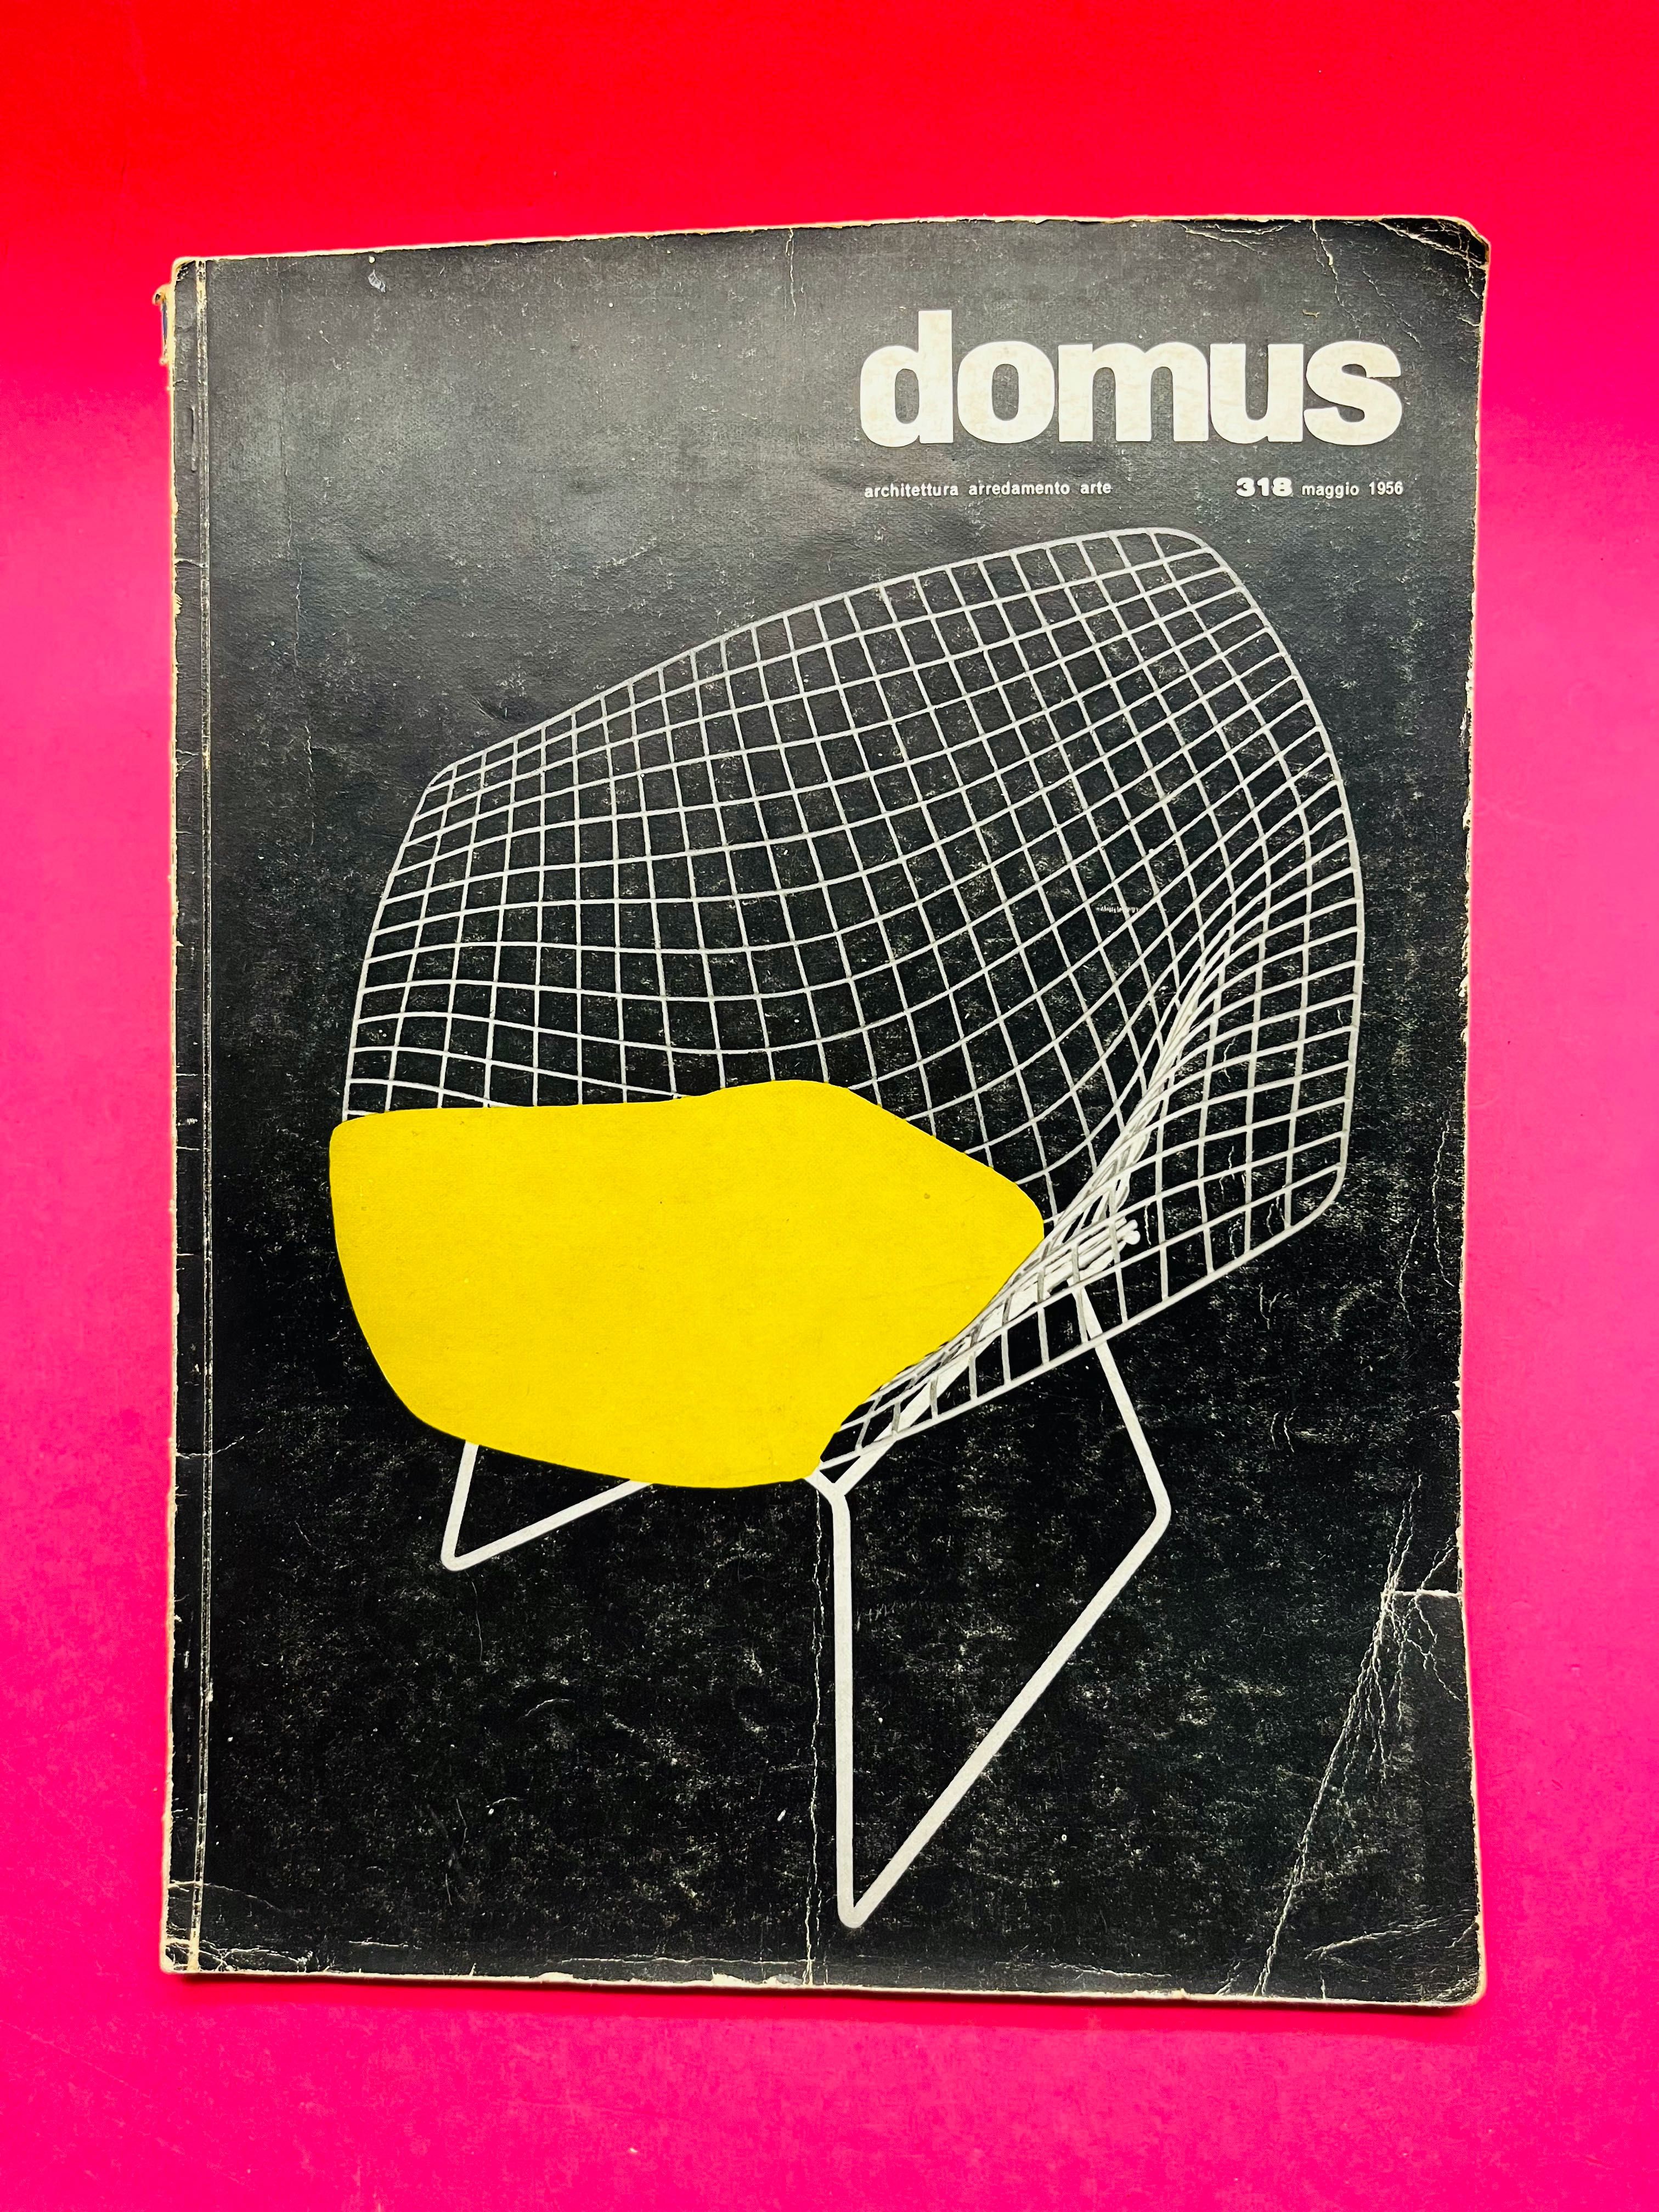 Domus Nº318 Maggio 1956